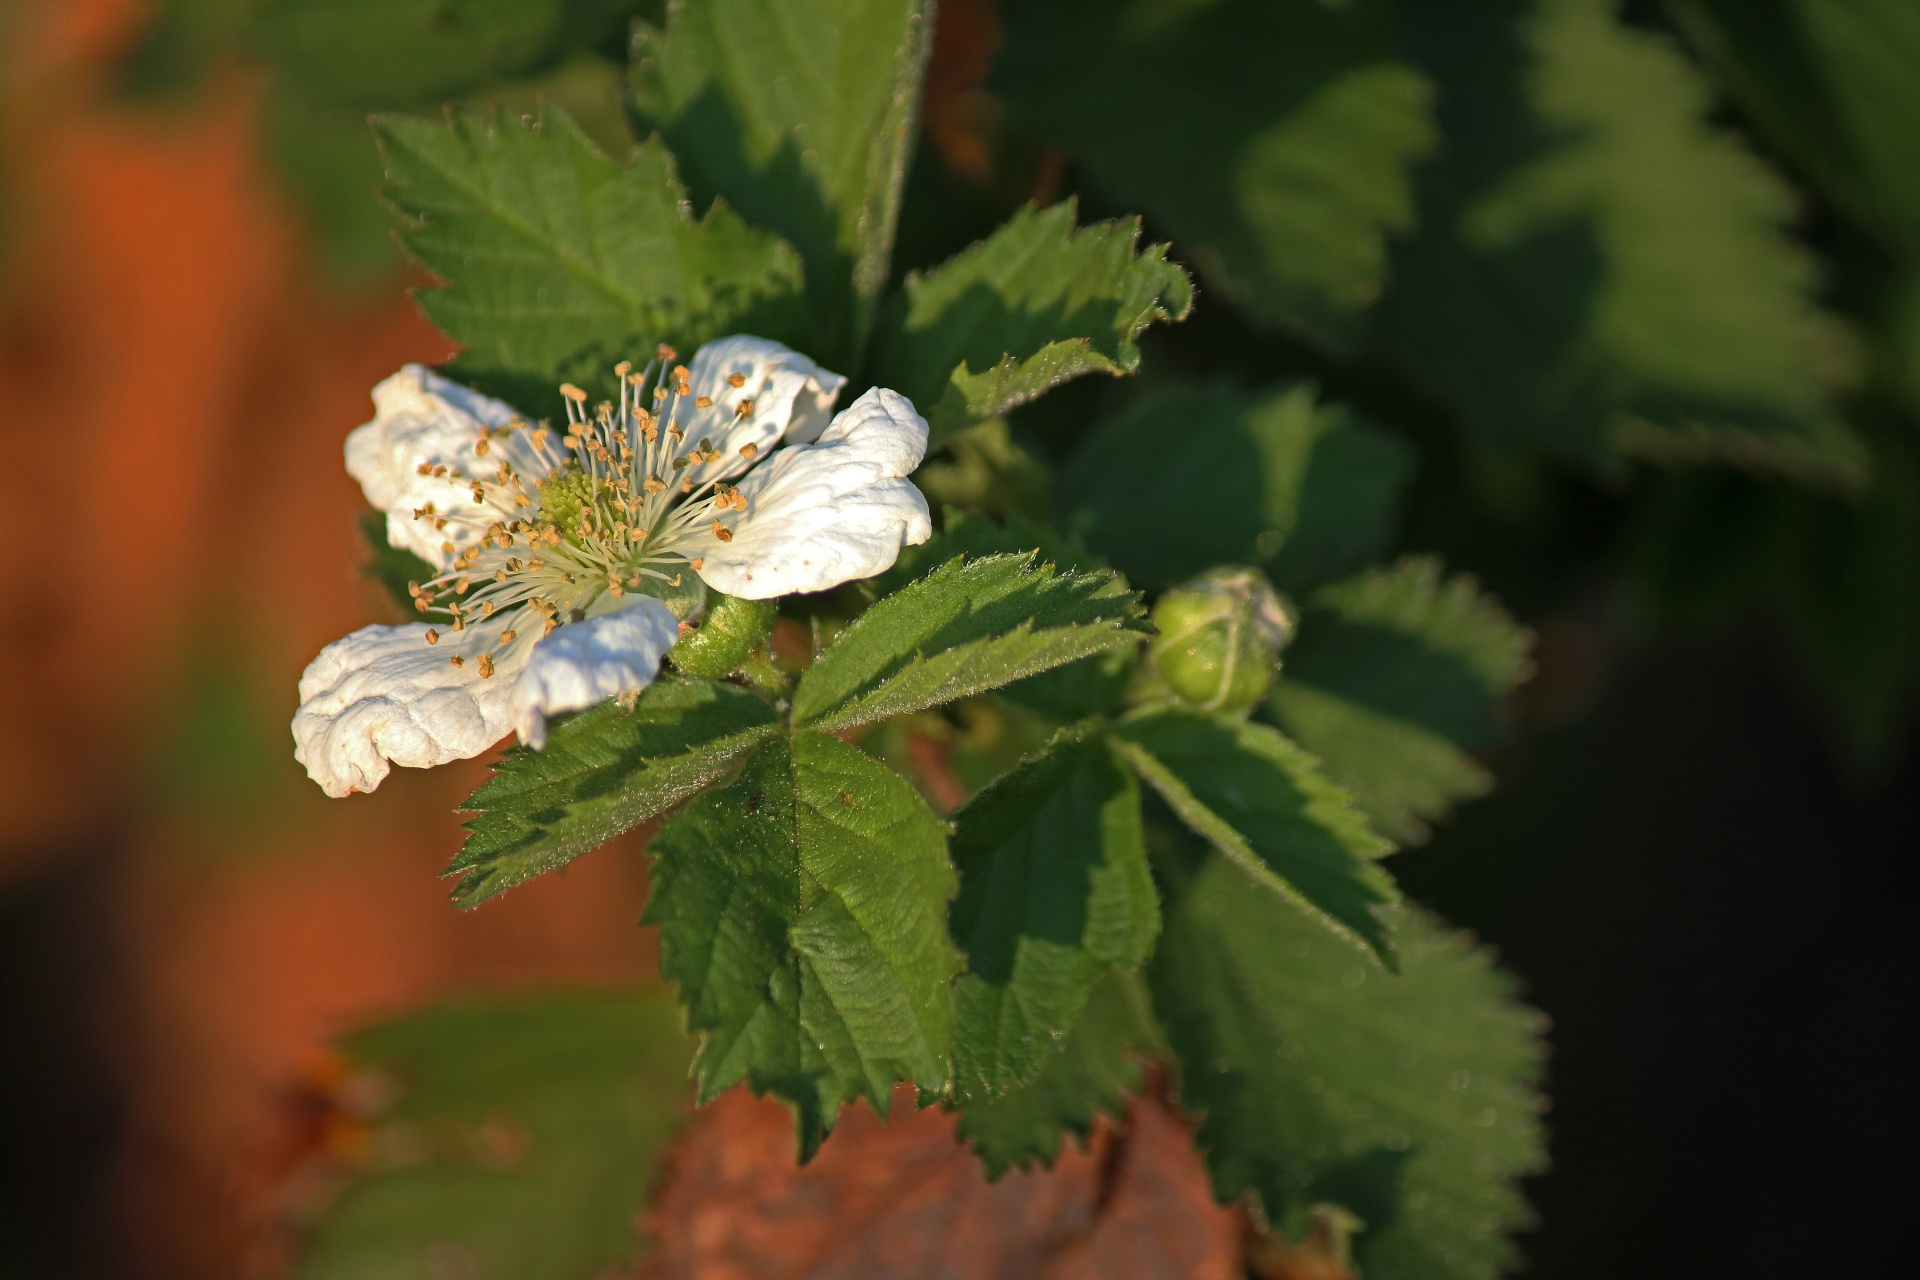 delicate white bramble blossom in a garden